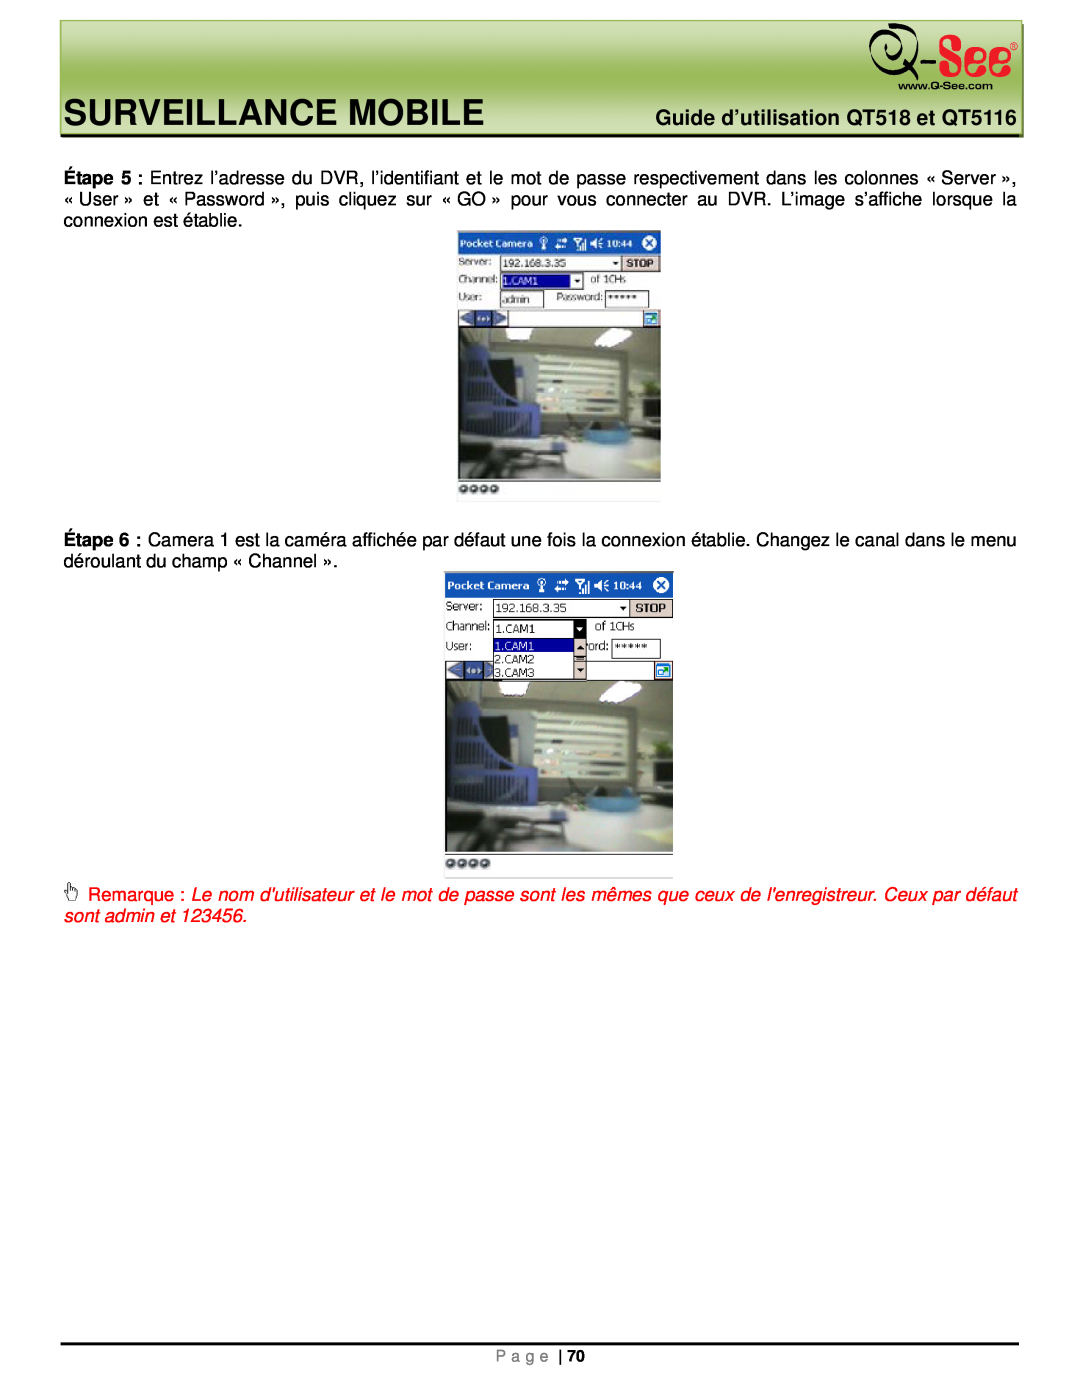 Q-See manual Surveillance Mobile, Guide d’utilisation QT518 et QT5116 